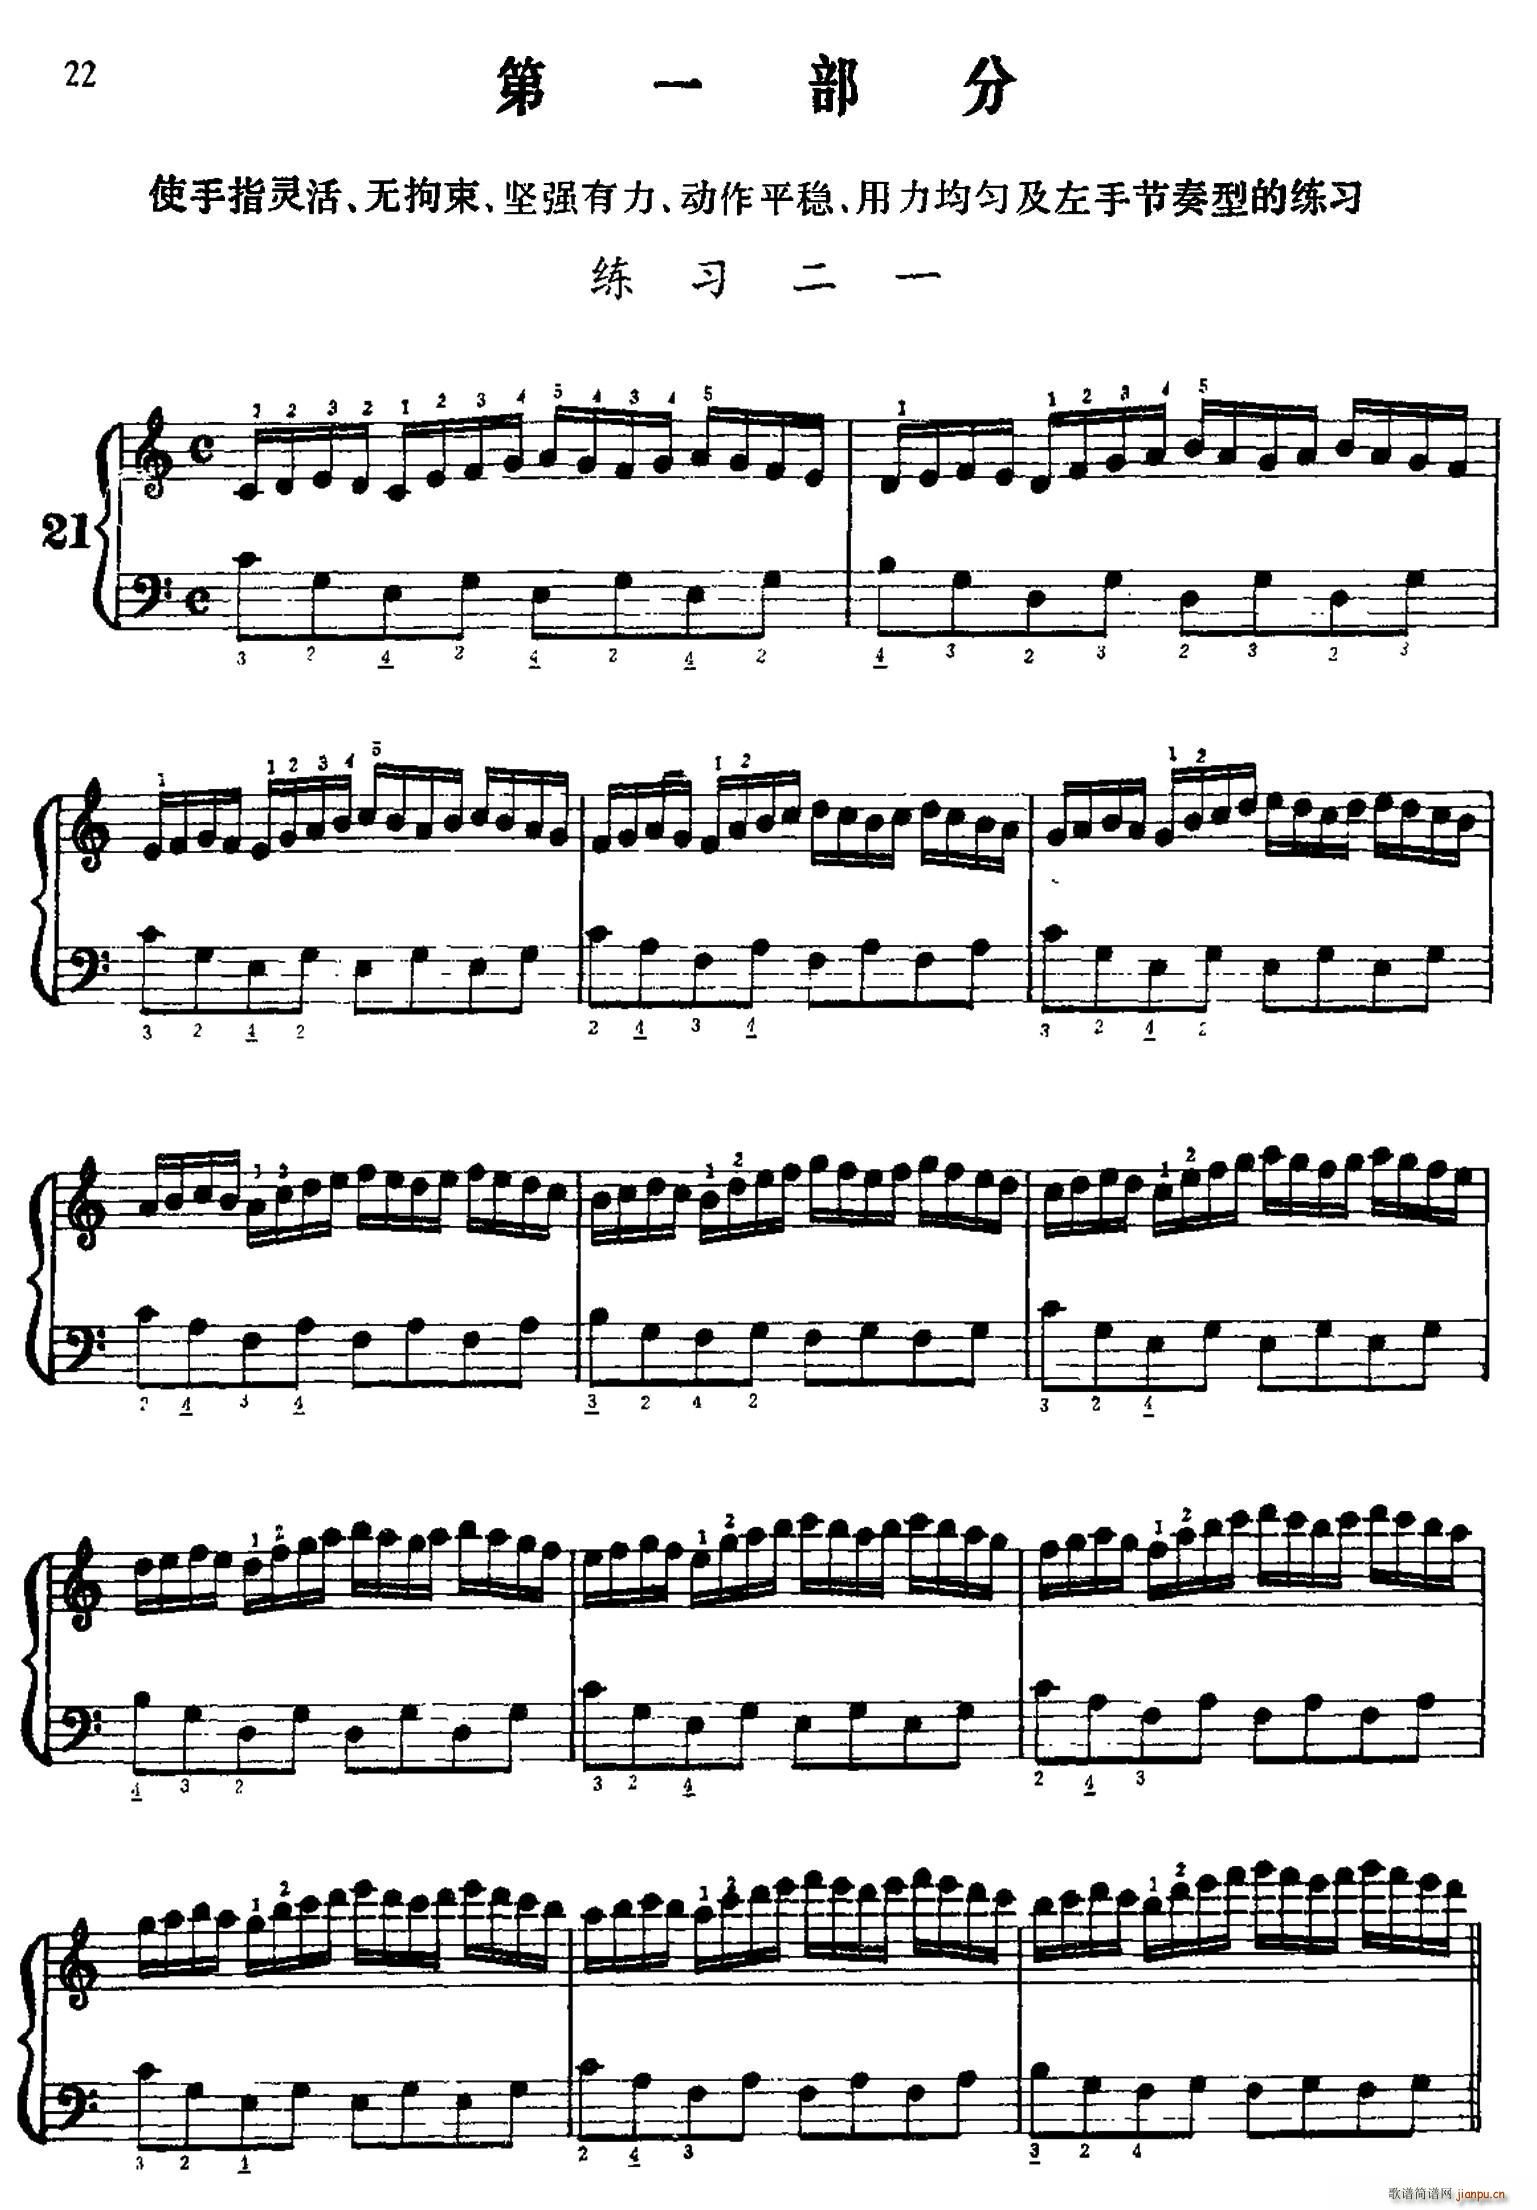 手风琴手指练习 第一部分 21 30(手风琴谱)1